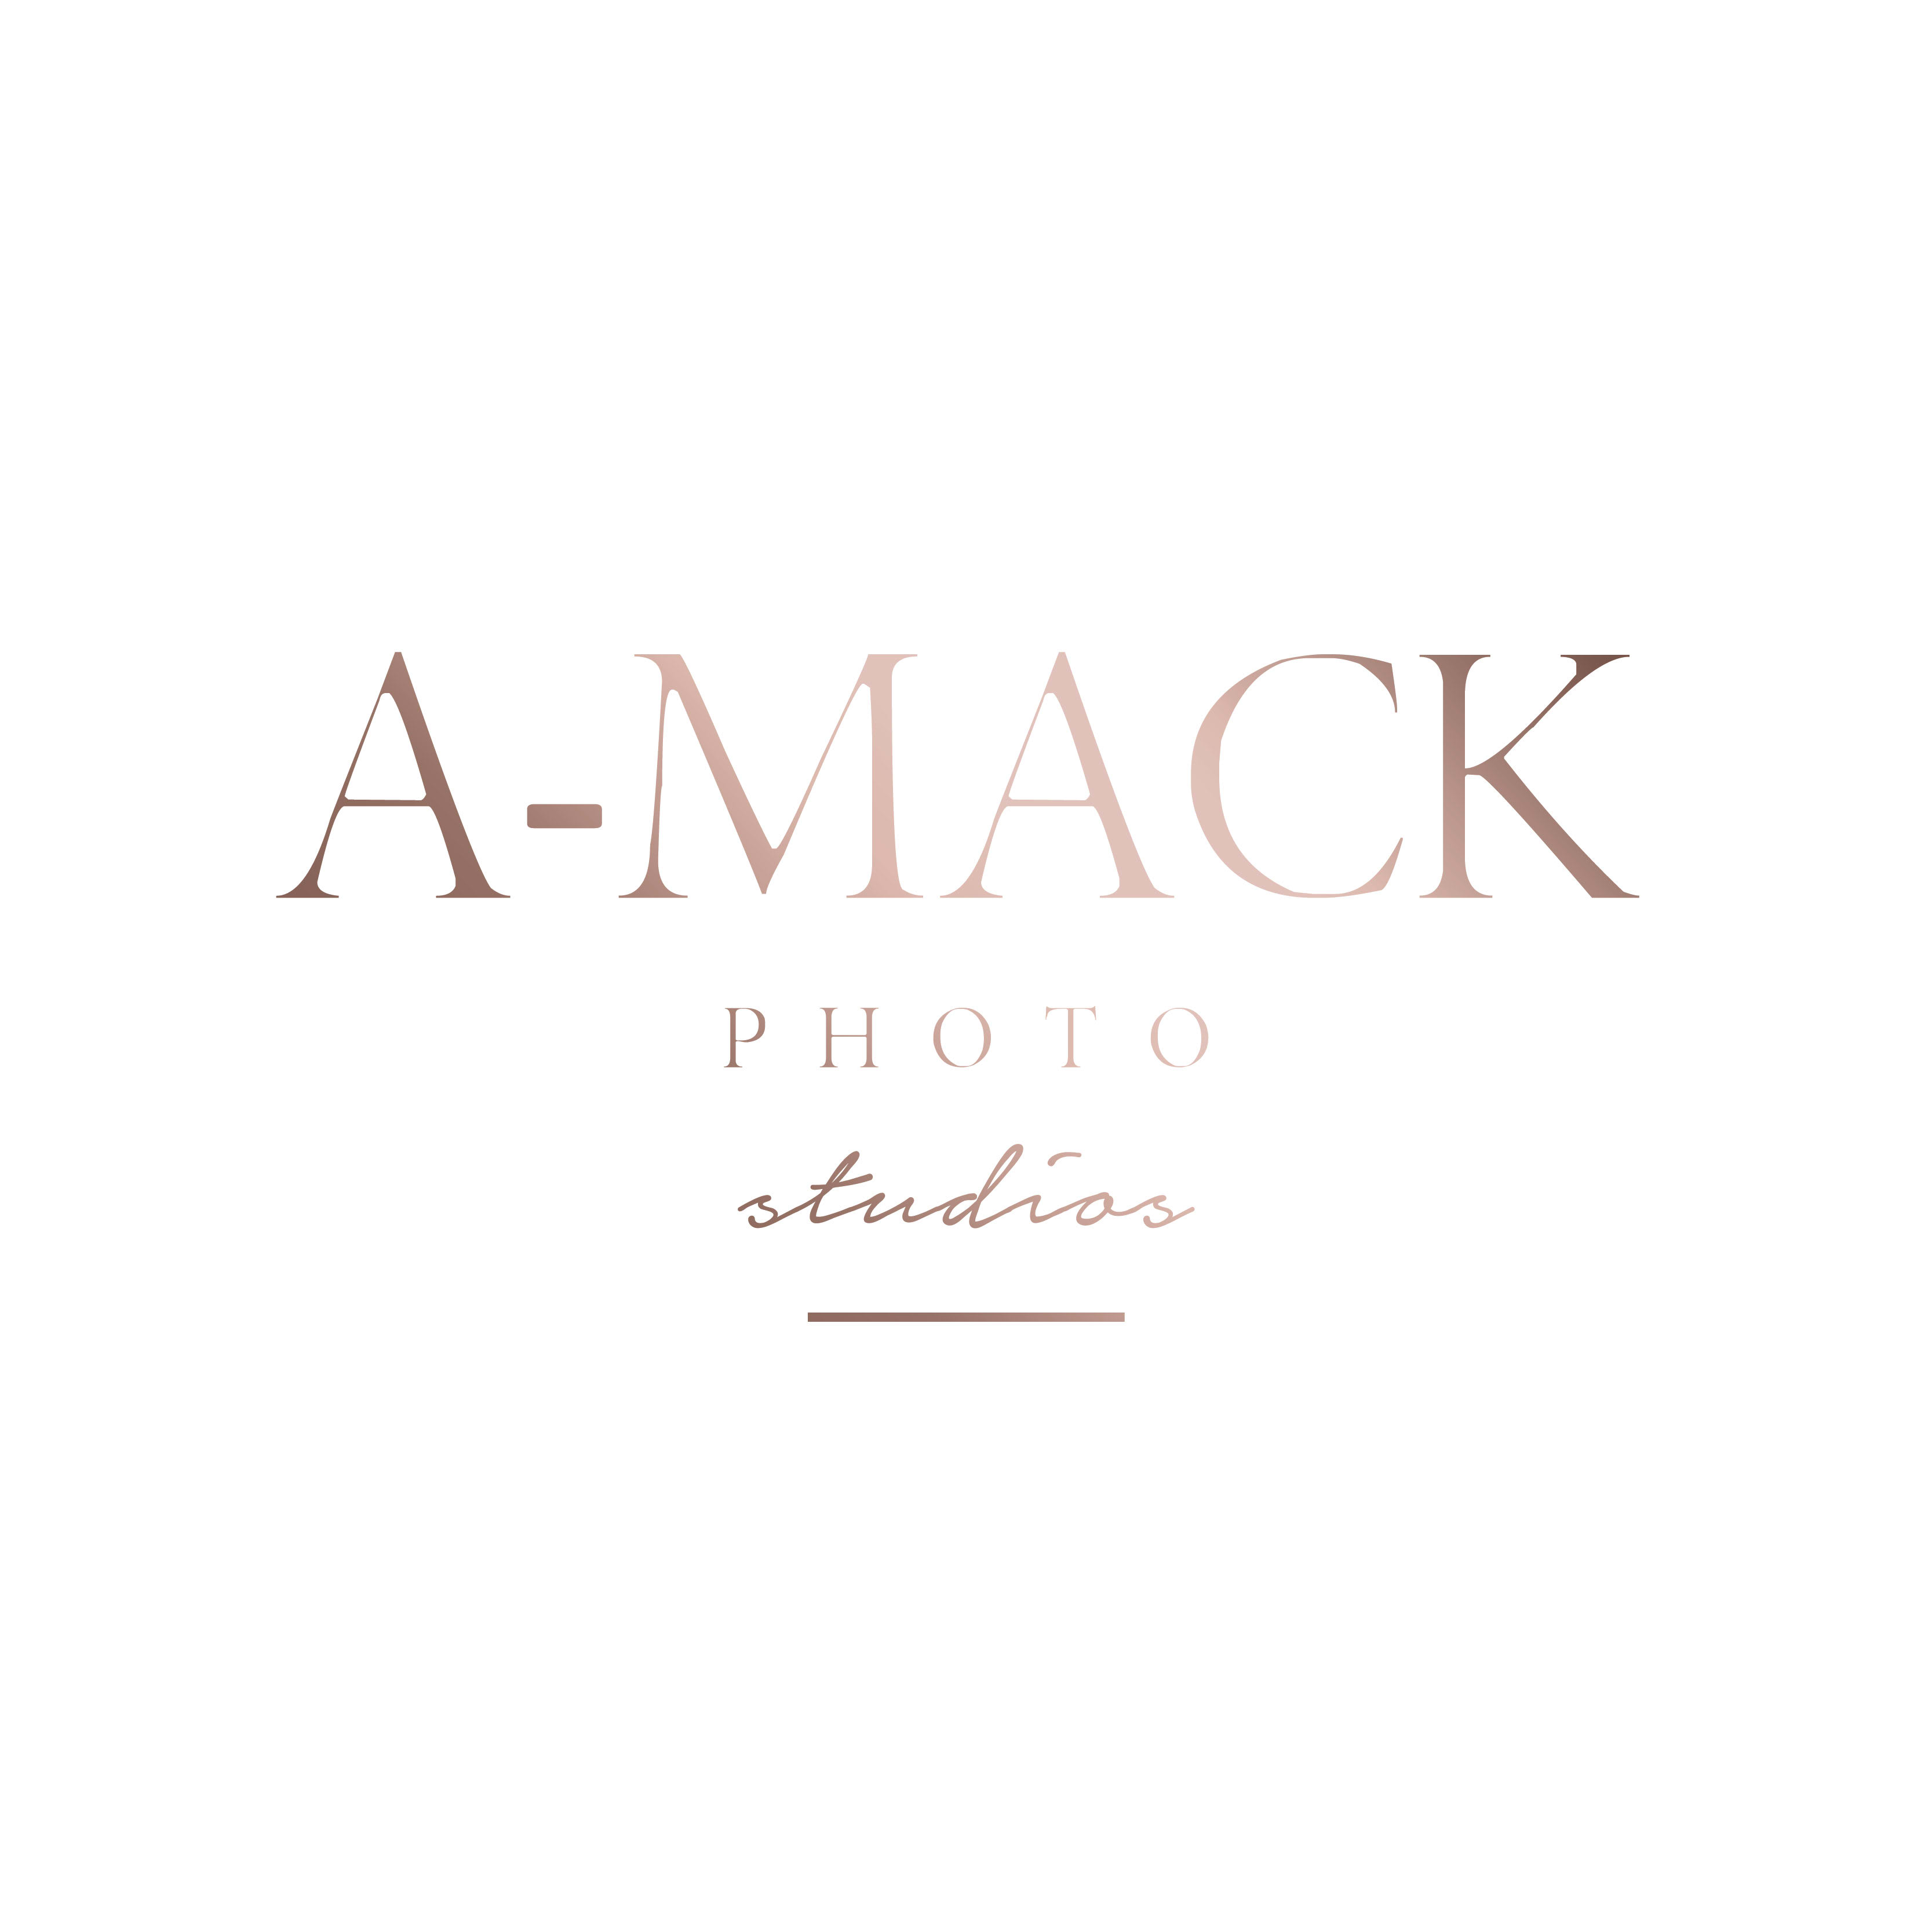 A-Mack Photo Studios